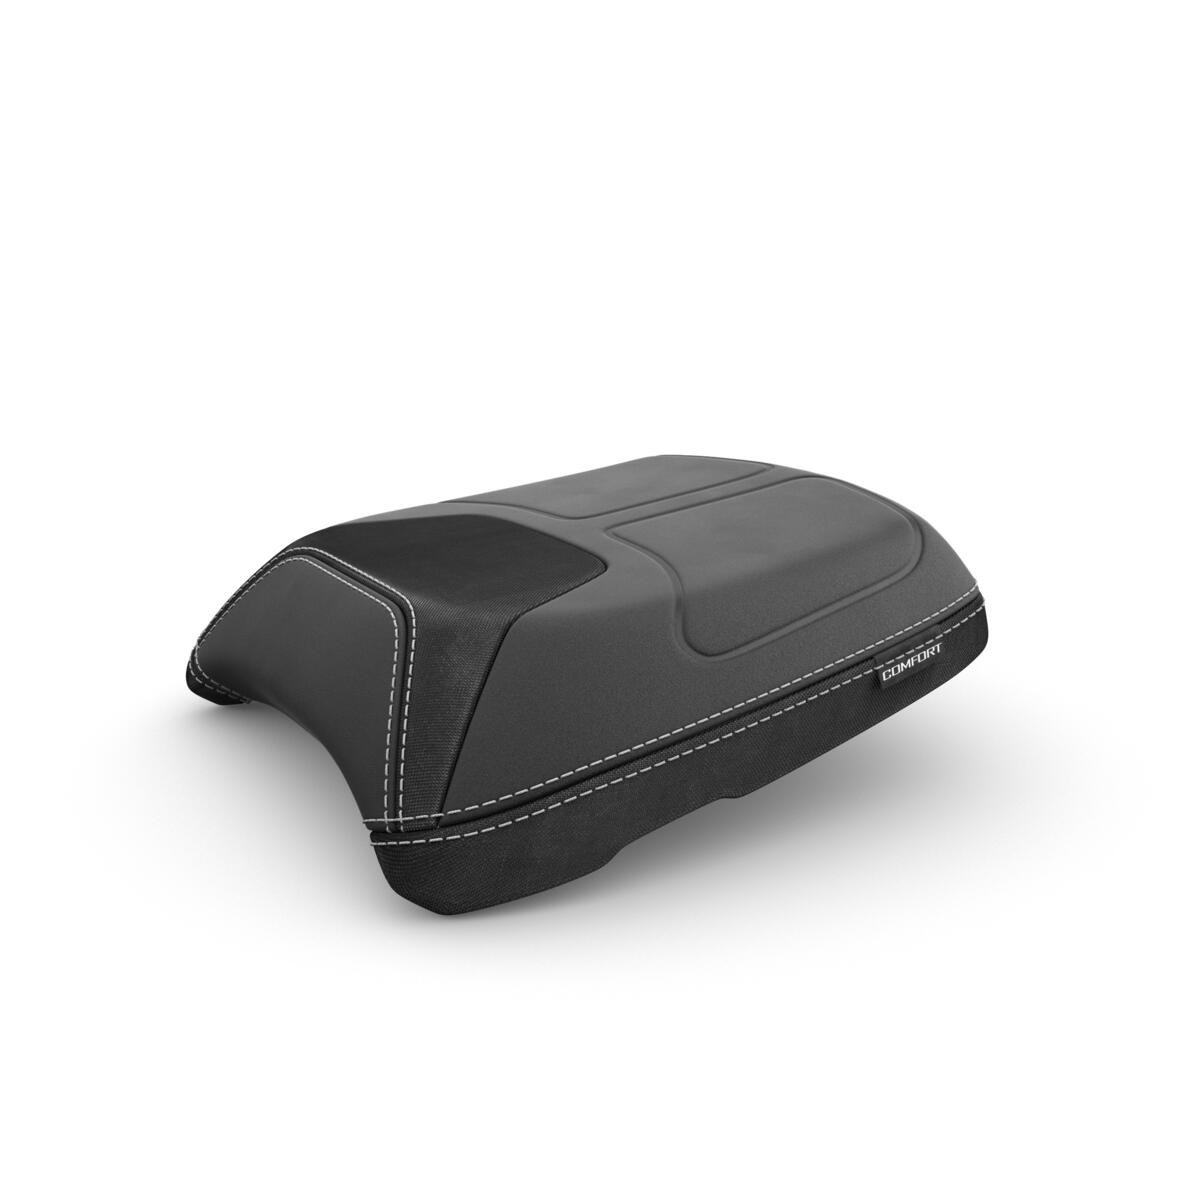 Najlepsze wyposażenie podróżne do Tracera 9, które zapewni Ci funkcjonalność i niepowtarzalny styl. Wysoka szyba, podgrzewane manetki i komfortowe, podgrzewane siedzenie zapewniają dodatkowy komfort na długich, niekończących się drogach. Na wszelki wypadek, gdy potrzebna jest większa ochrona przed wiatrem, w Pakiecie Podróżnym Pro znajduje się również deflektor zapewniający większy komfort podczas jazdy. Kufry boczne i kufer centralny to idealne rozwiązanie do zabrania wszystkich potrzebnych rzeczy. Za pomocą ładowarki USB naładujesz telefon lub urządzenie do nawigacji GPS, a specjalne narzędzie pozwoli Ci monitorować ciśnienia w oponach. W pakiecie jest również specjalny uchwyt do zamocowania urządzenia GPS. Przedłużenie stopki bocznej zwiększa stabilność zaparkowanego motocykla na każdej nawierzchni, osłona chłodnicy chroni ją przed uderzeniami drobnych kamieni i żwiru podczas jazdy, a osłony silnika dają zabezpieczenie w razie upadku. Światła przeciwmgielne LED zwiększają widoczność w złych warunkach pogodowych, zapewniając optymalne bezpieczeństwo. Kiedy Ty cieszysz się jazdą, my dbamy aby Twój pasażer też dobrze się bawił. Ten z pewnością ucieszy się z komfortowego siedzienia pasażera i akcesoryjnego oparcia.